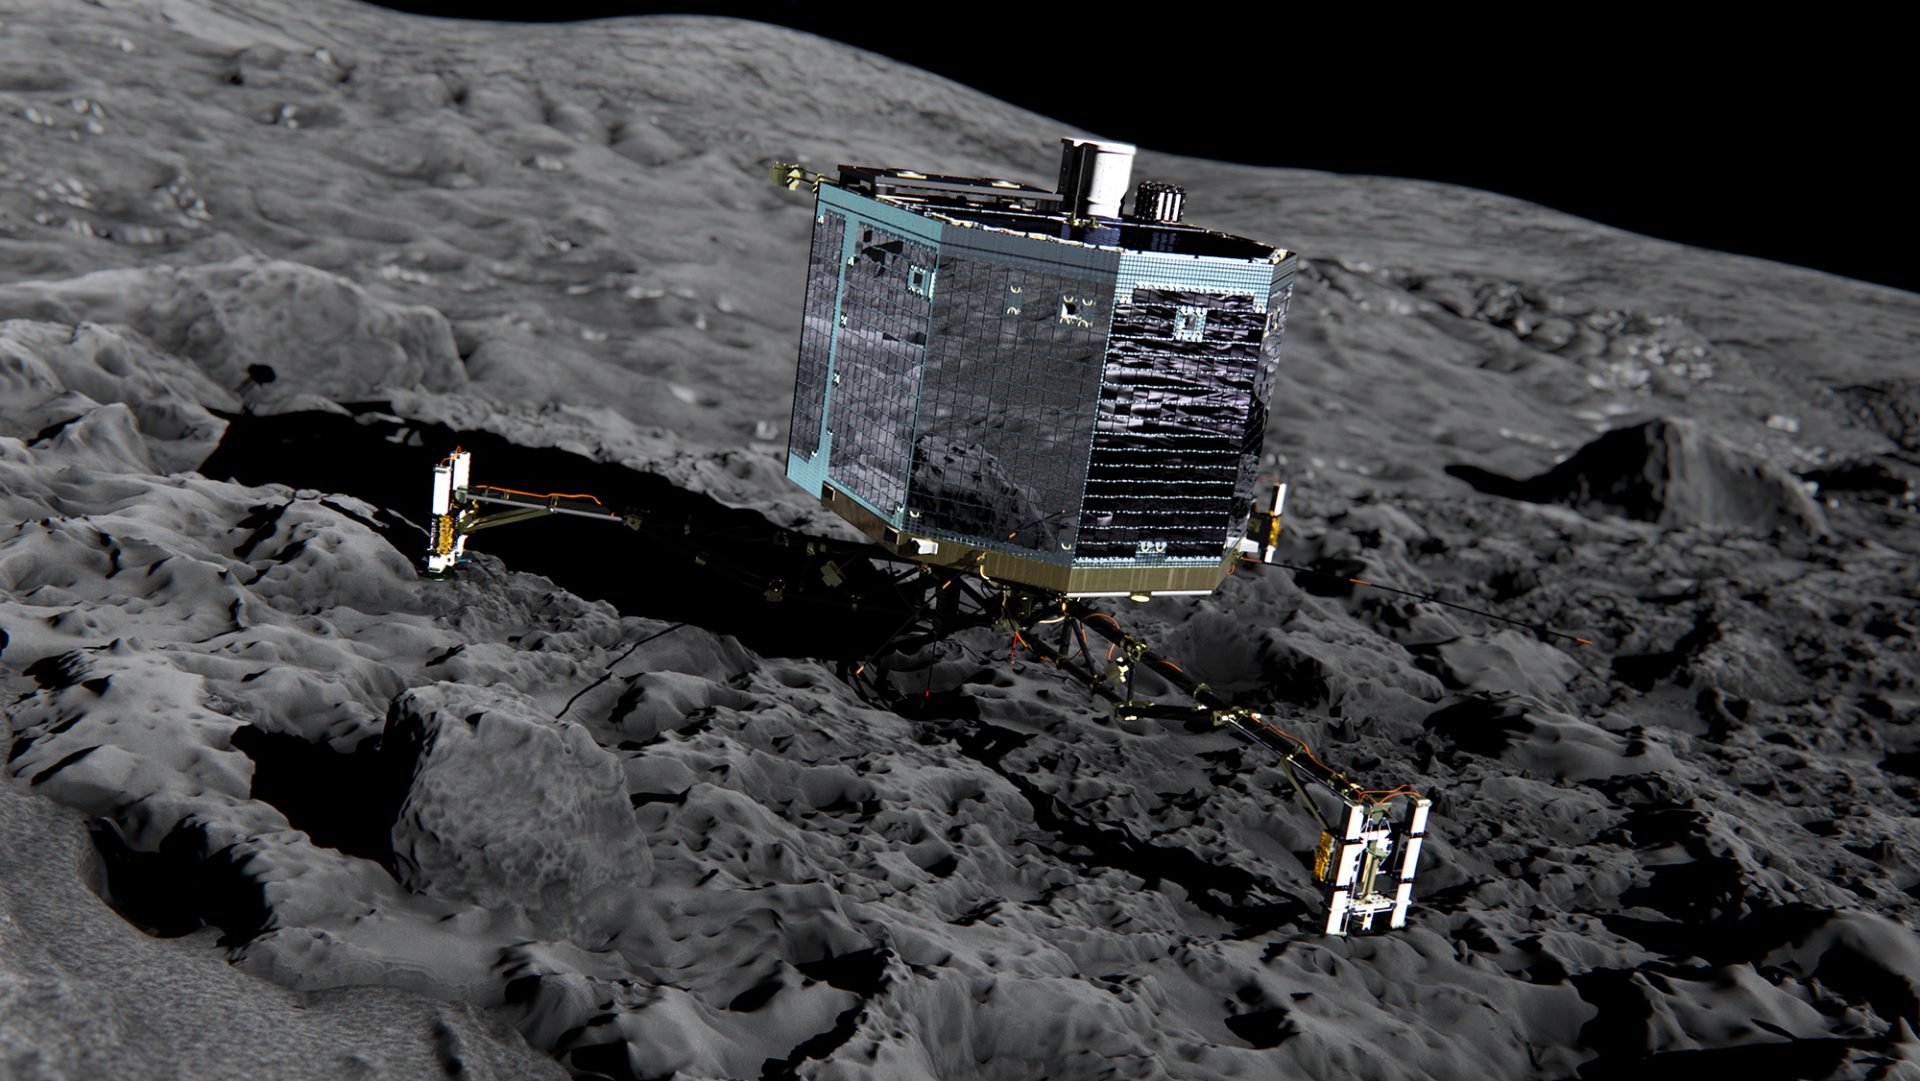 Sonda Rosetta estabelece segundo contacto com módulo na superfície de cometa